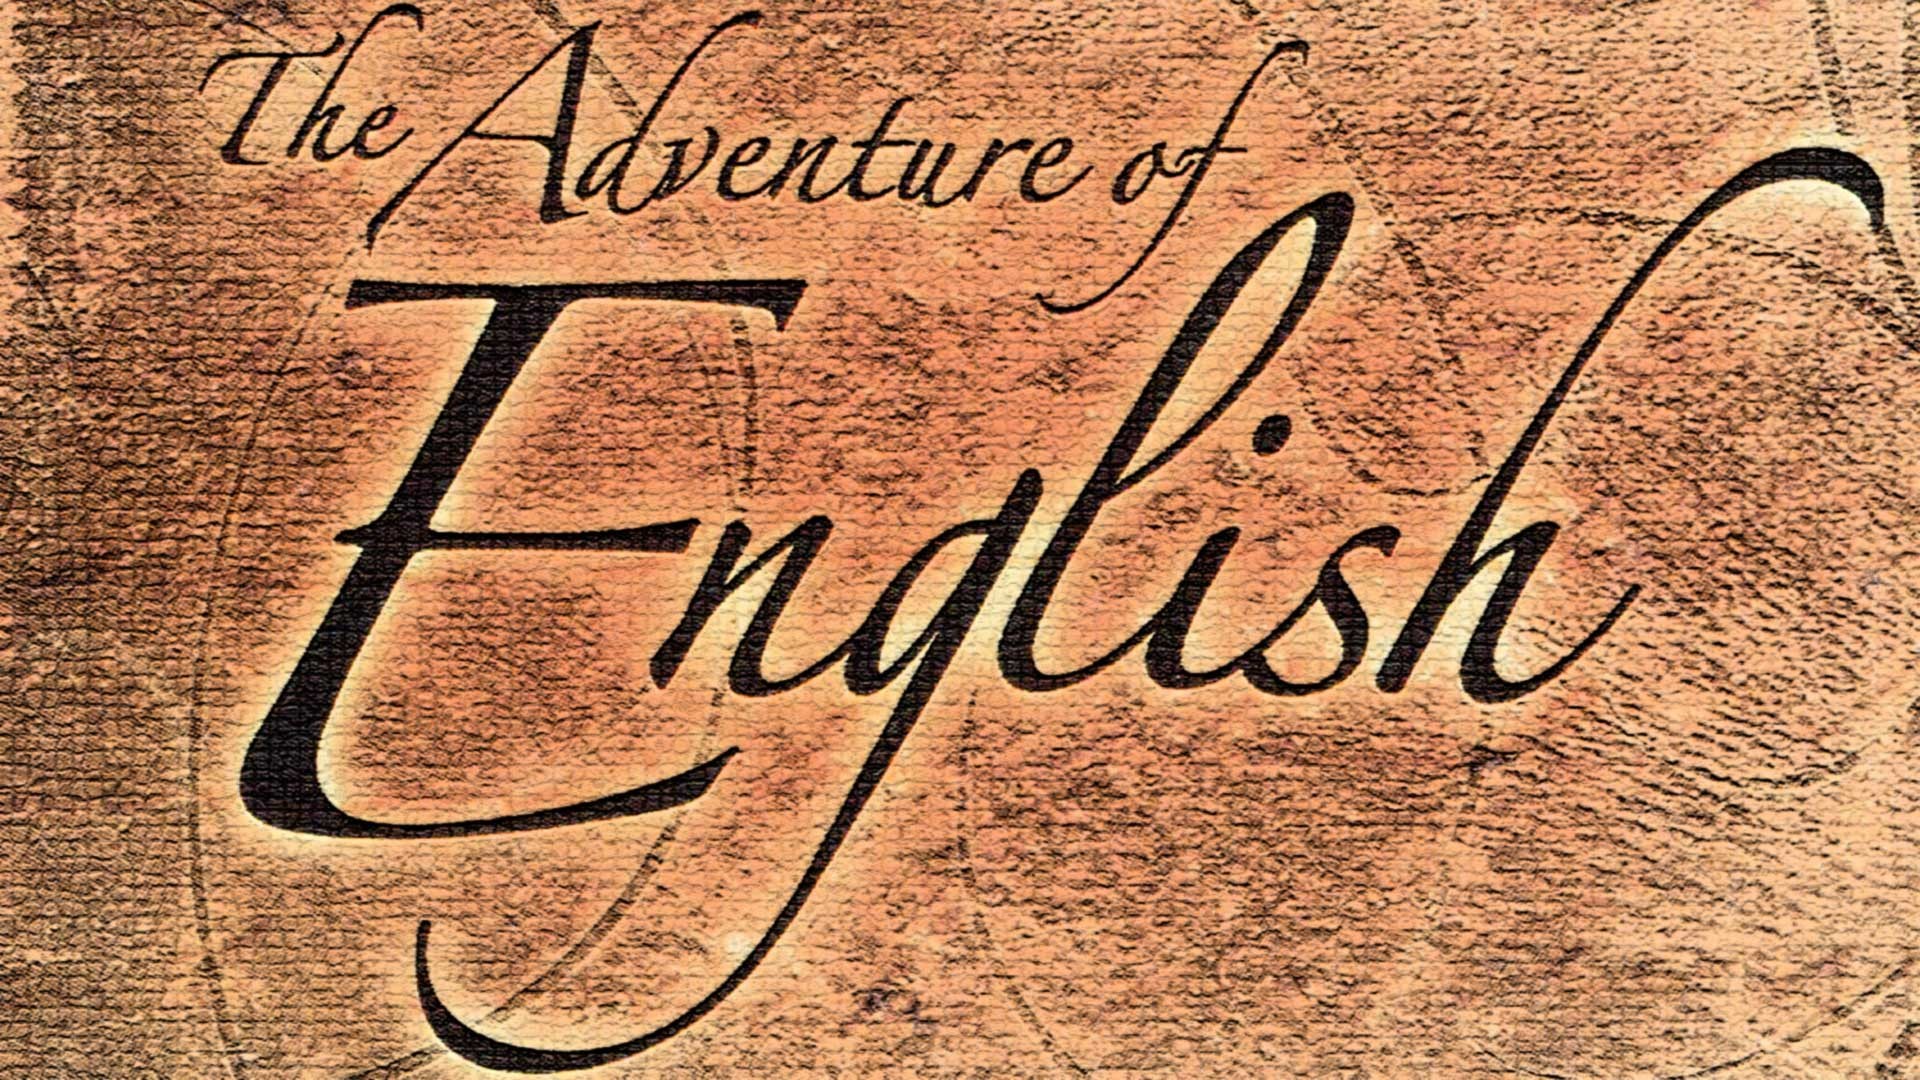 Приключенческий на английском. English Adventure. Приключения английского языка Мелвин Брэгг. The Adventure of English Episode 1. The Adventure of English Episode 1 Birth.